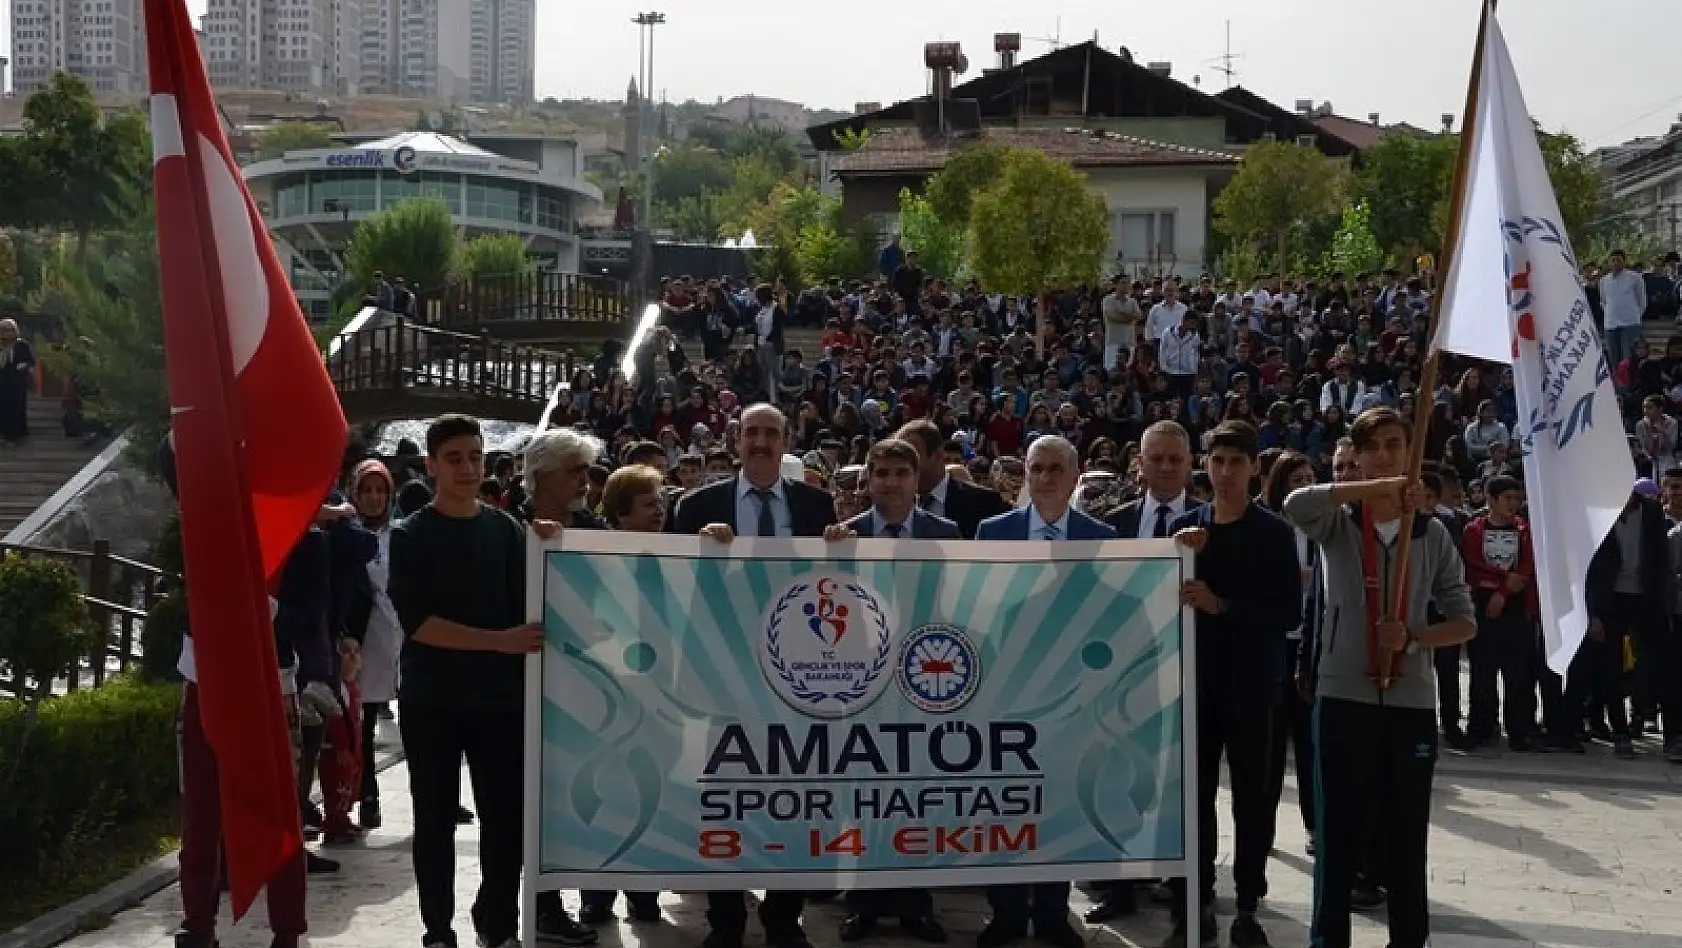 Malatya'da Amatör Spor Haftası başladı 